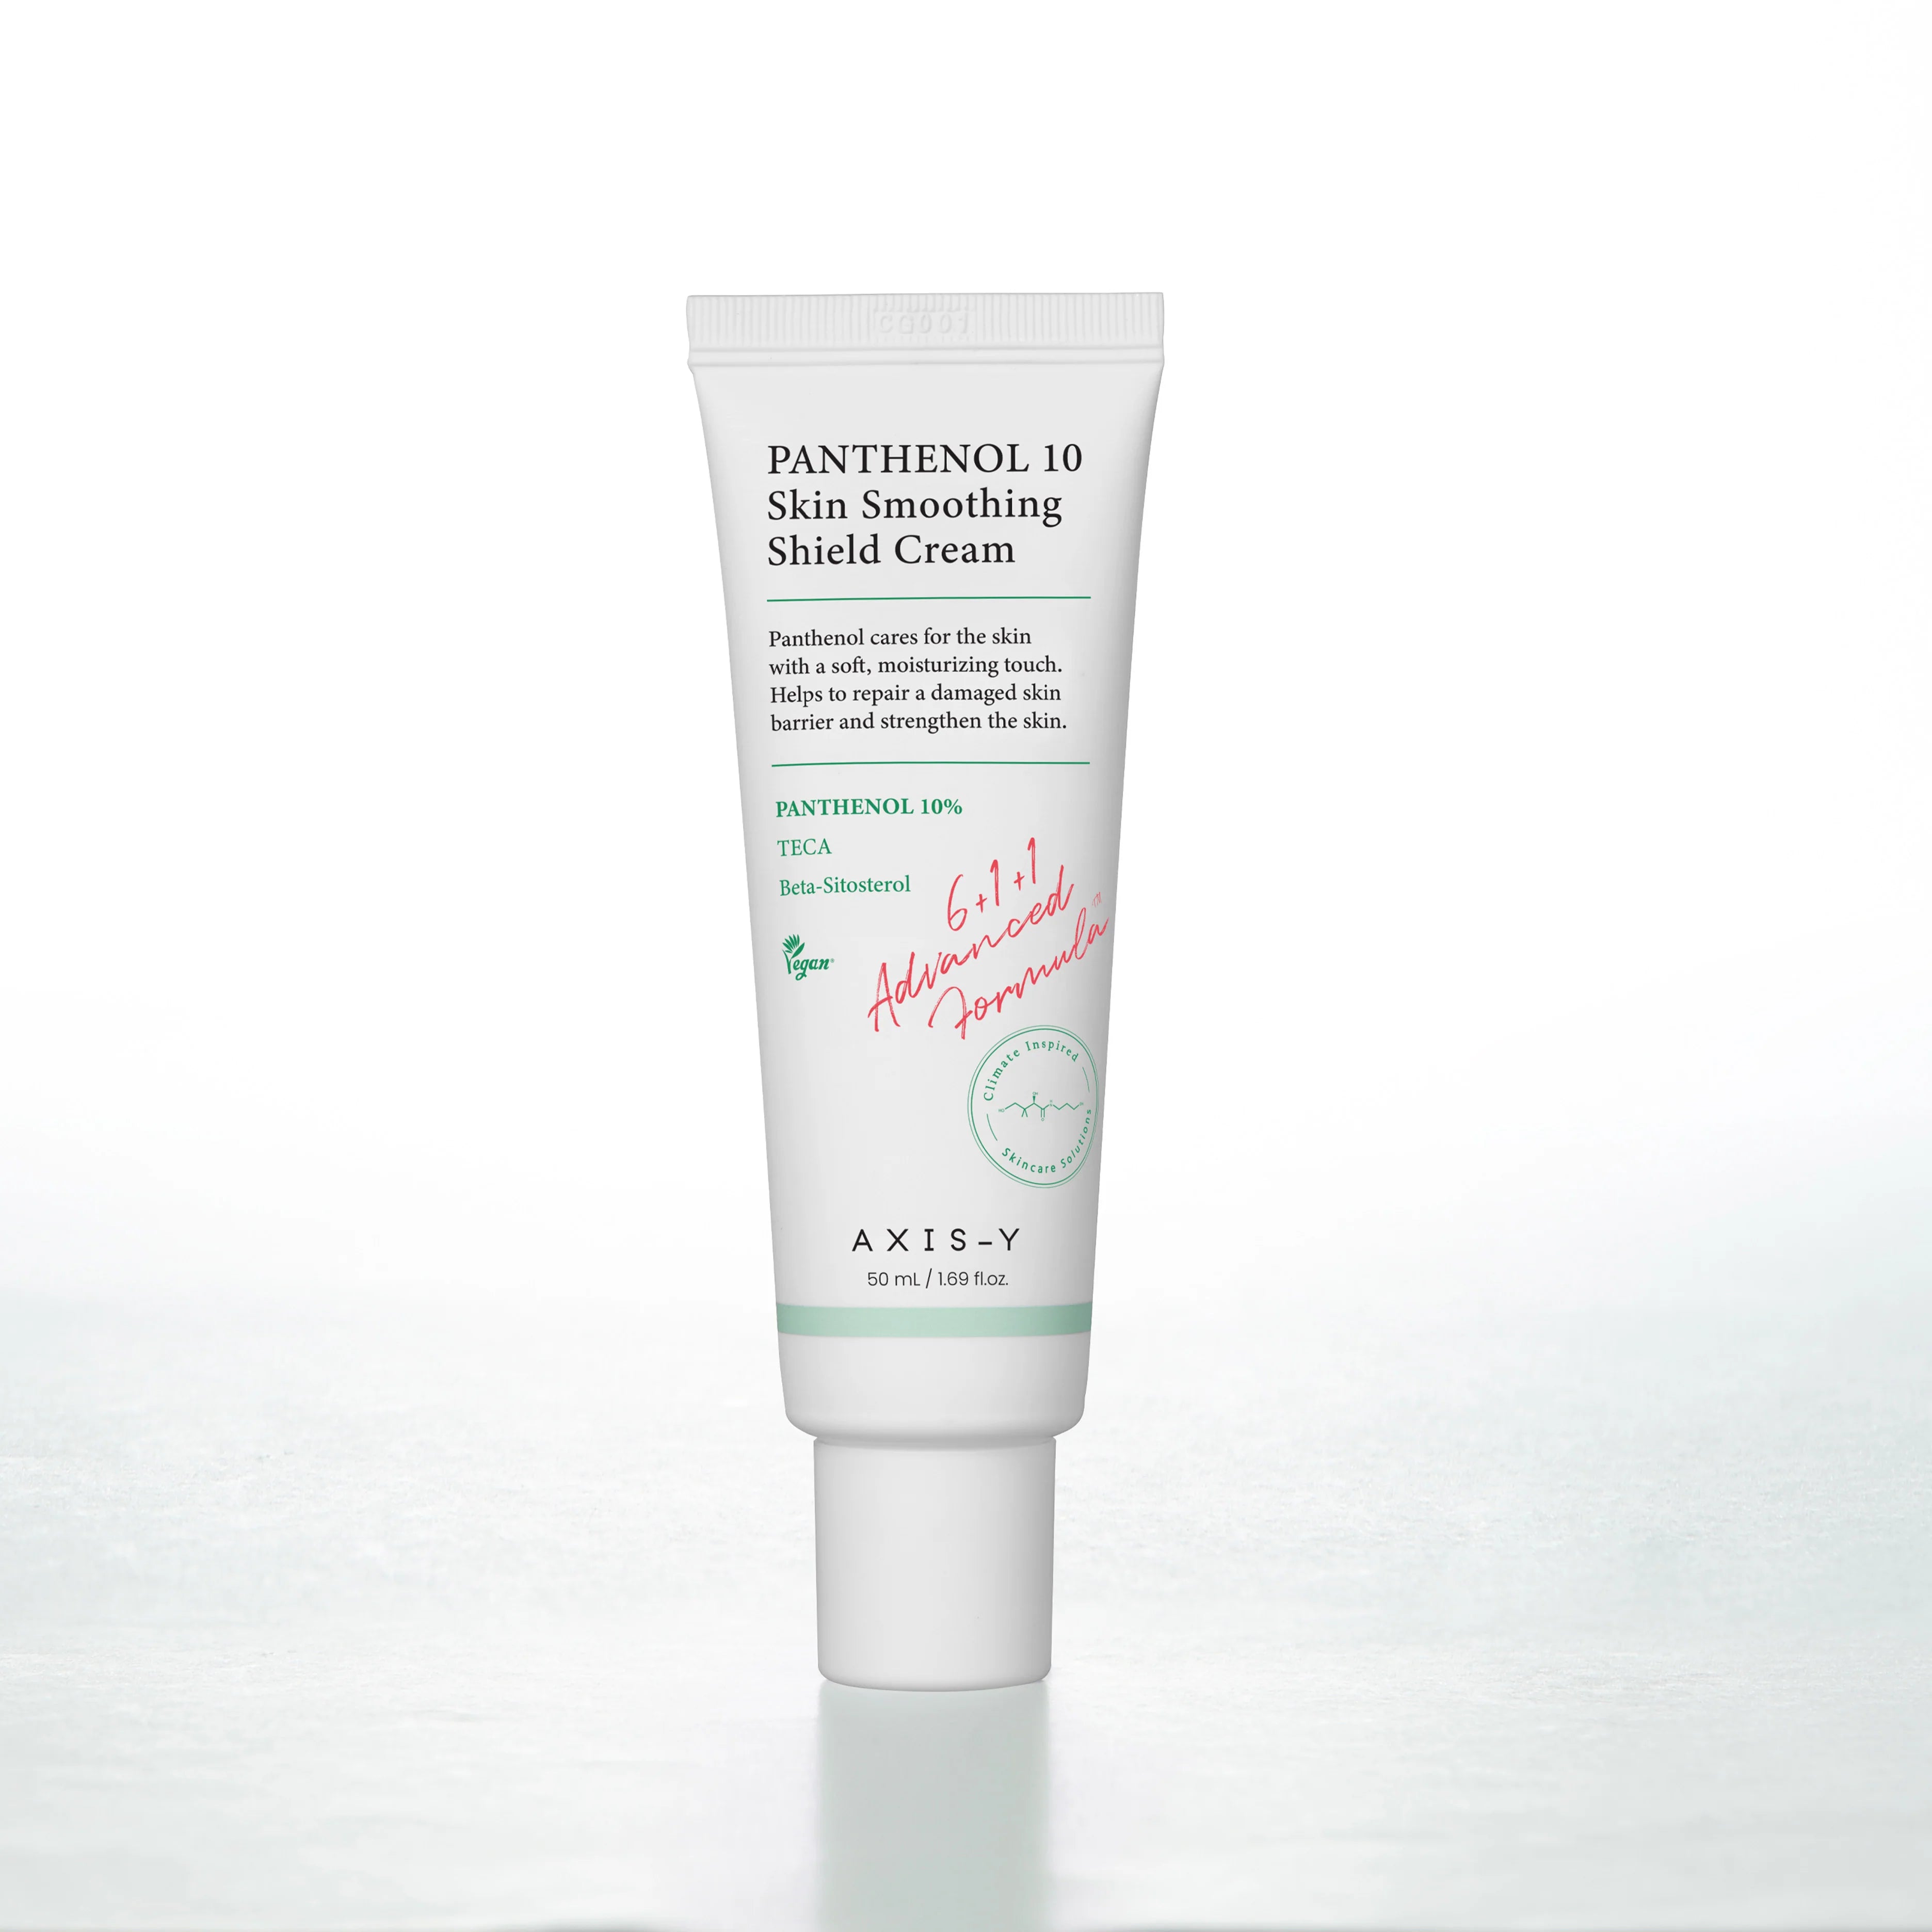 Axis Y - Panthenol 10 Skin Smoothing Sheild Cream 50ml | MakeupMSash PakiMSan 